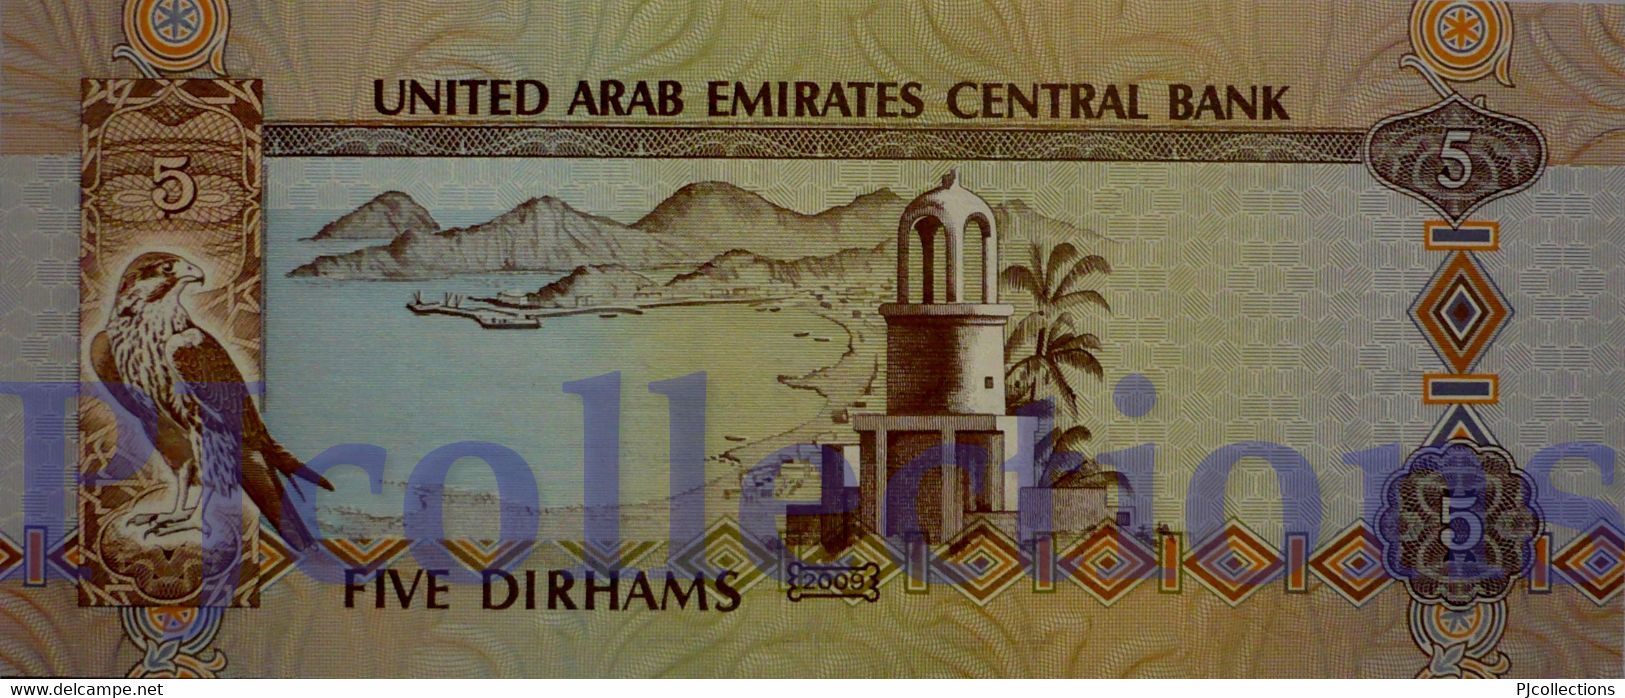 UNITED ARAB EMIRATES 5 DIRHAMS 2009 PICK 26a UNC - Ver. Arab. Emirate